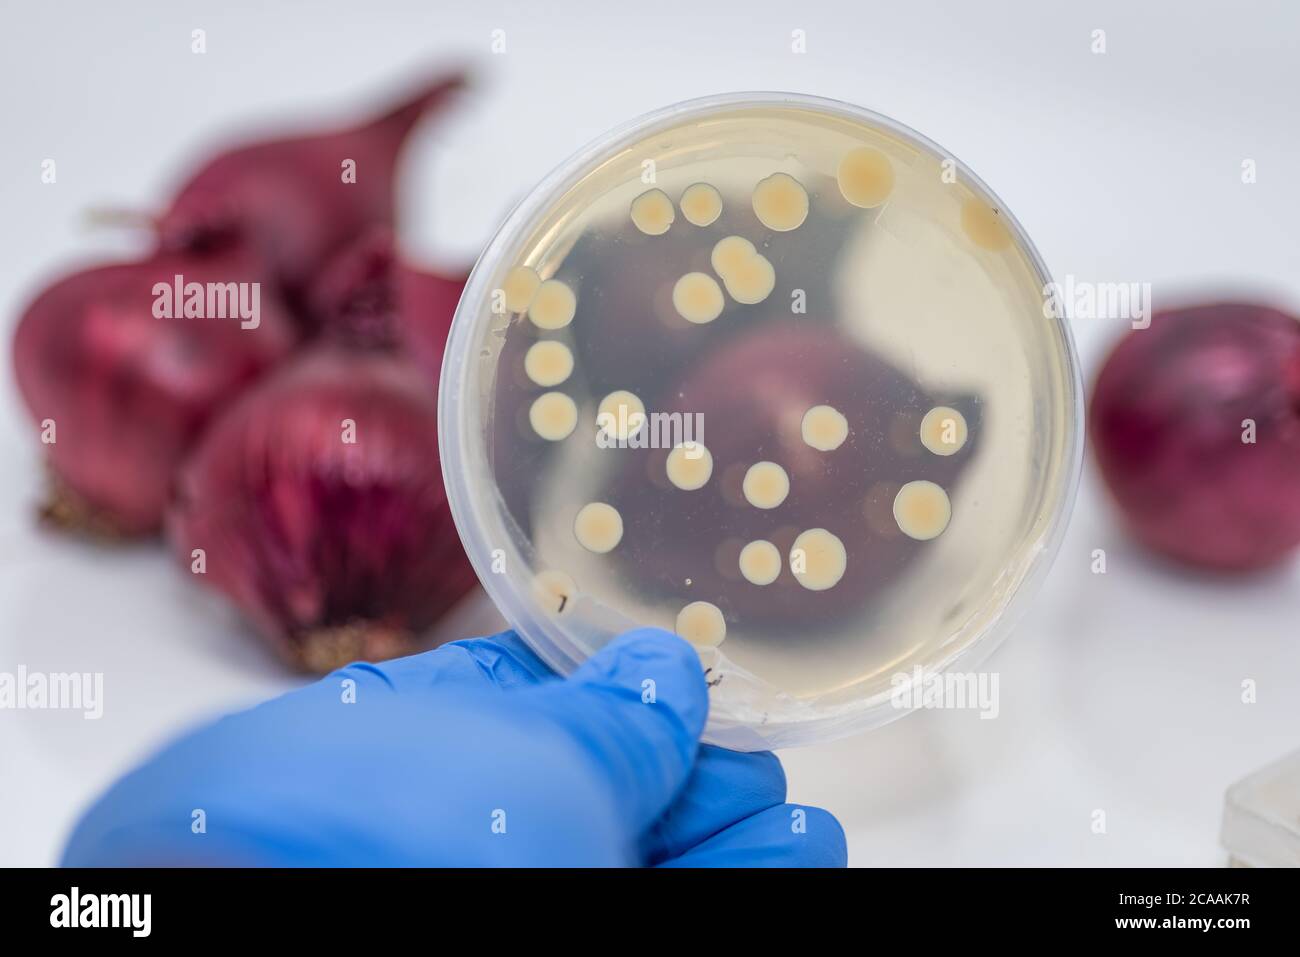 Pathogene E coli/Salmonellen-Kontamination in roten Zwiebeln, Kulturplatte zeigt Bakterienkolonie isoliert von kontaminierten roten Zwiebeln Stockfoto